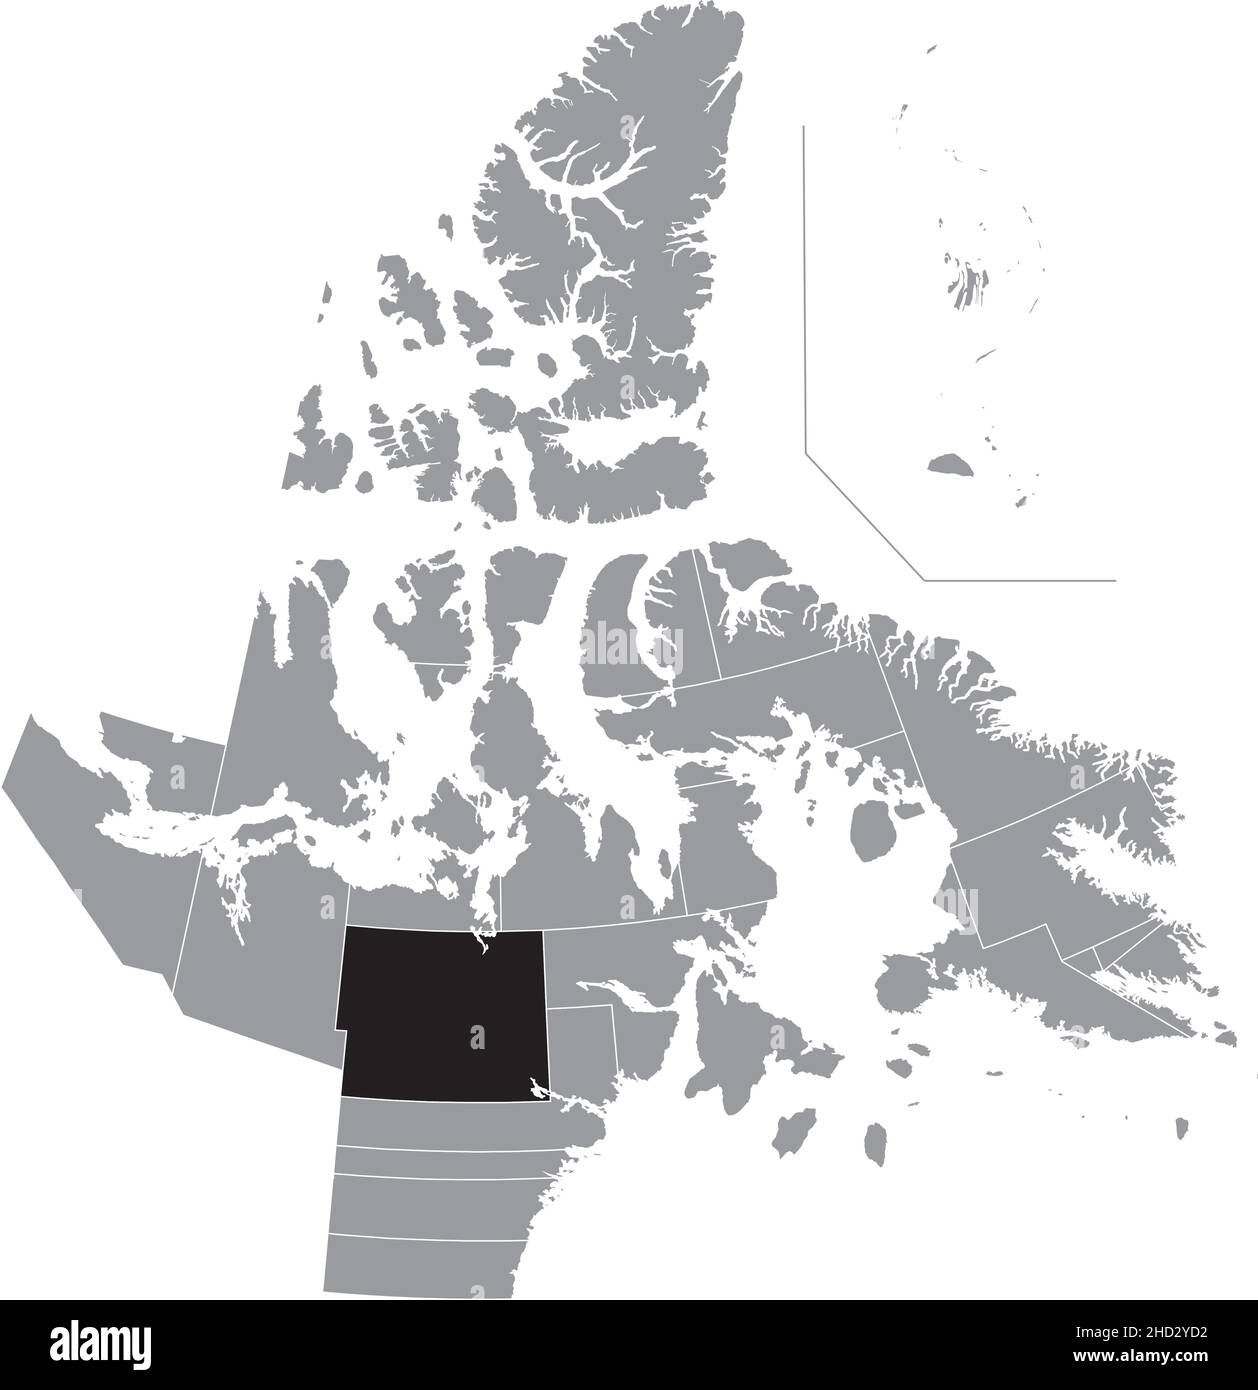 Schwarz flach leer markiert Lageplan des BAKER LAKE District innerhalb der grauen Verwaltungskarte der territorialen Wahlbezirke von Kanada Stock Vektor